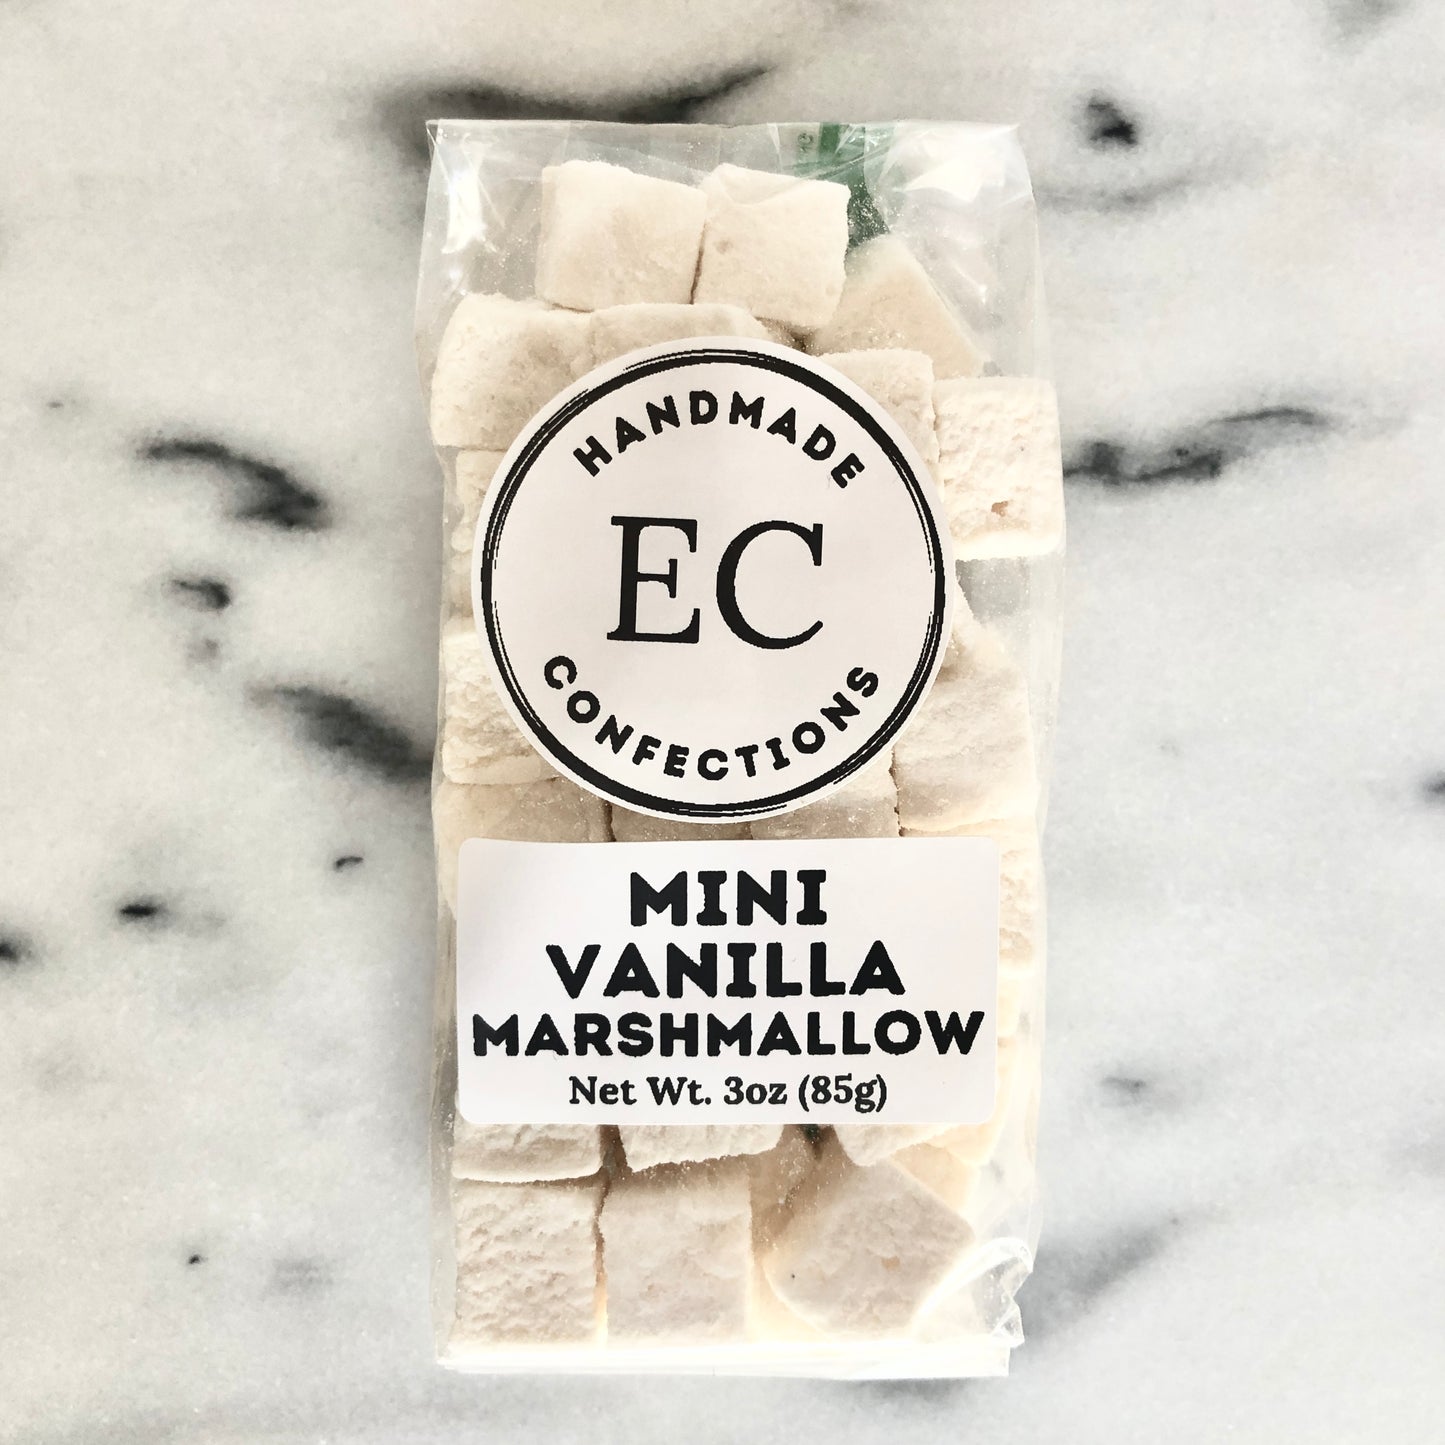 Vanilla Marshmallows